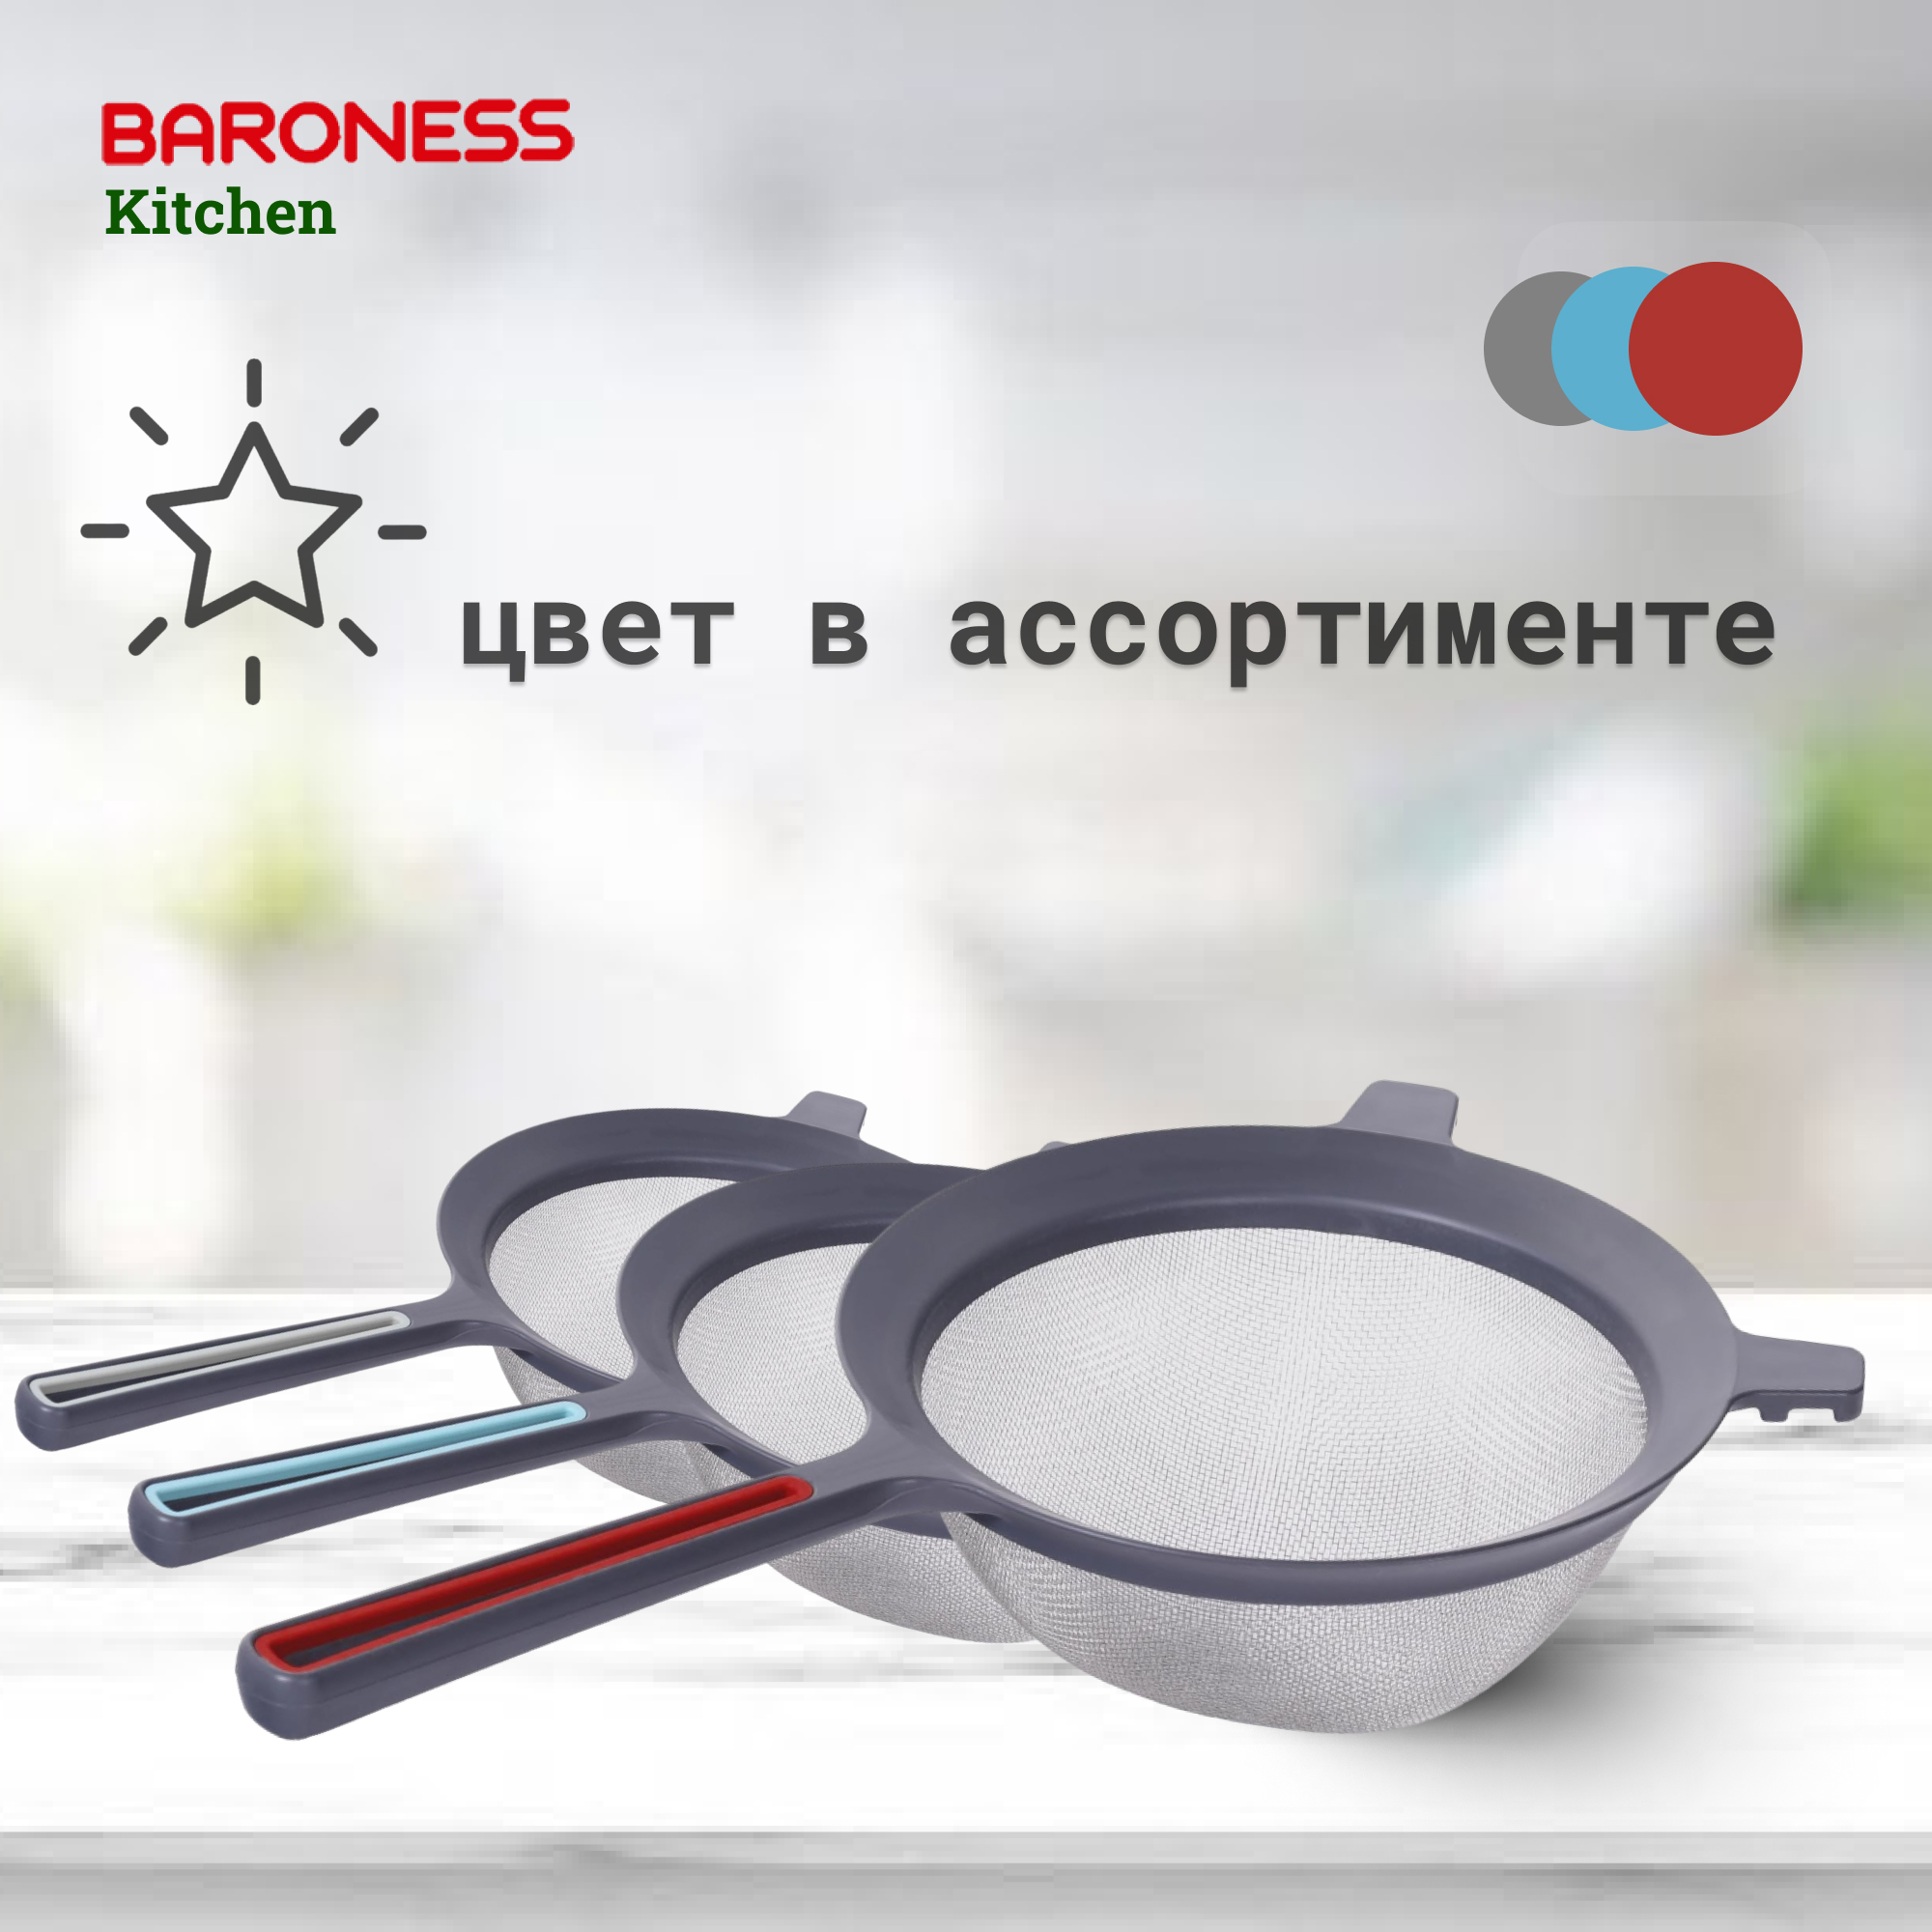 Дуршлаг Baroness Kitchen средний с ручкой 17 см в ассортименте, цвет серый - фото 4